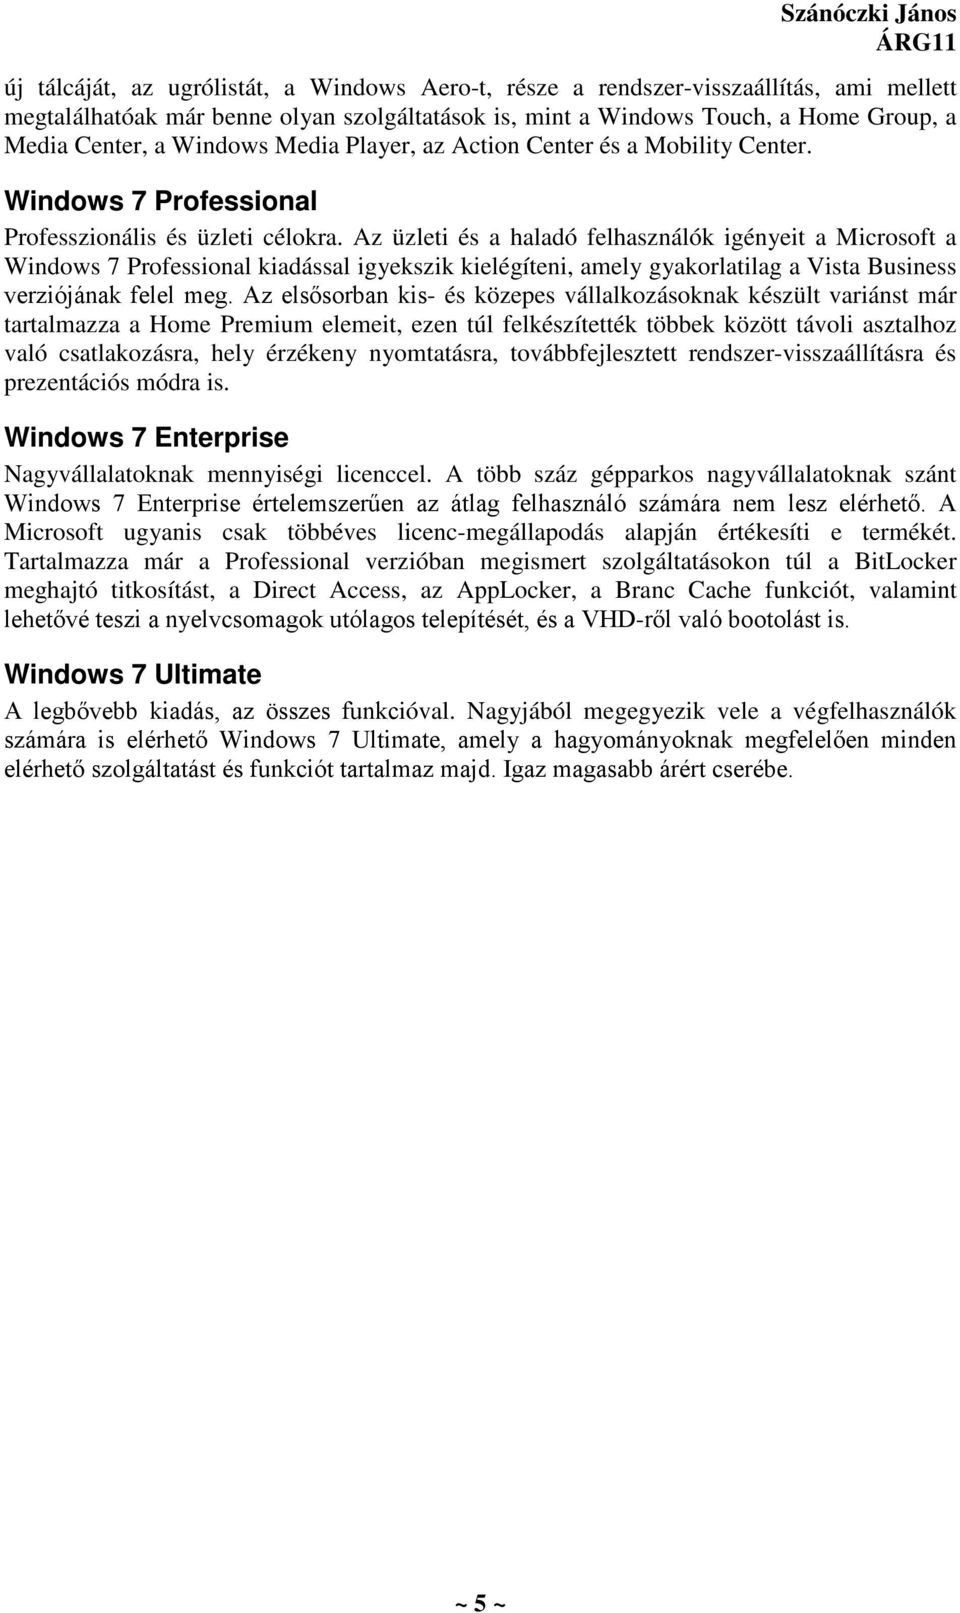 Az üzleti és a haladó felhasználók igényeit a Microsoft a Windows 7 Professional kiadással igyekszik kielégíteni, amely gyakorlatilag a Vista Business verziójának felel meg.